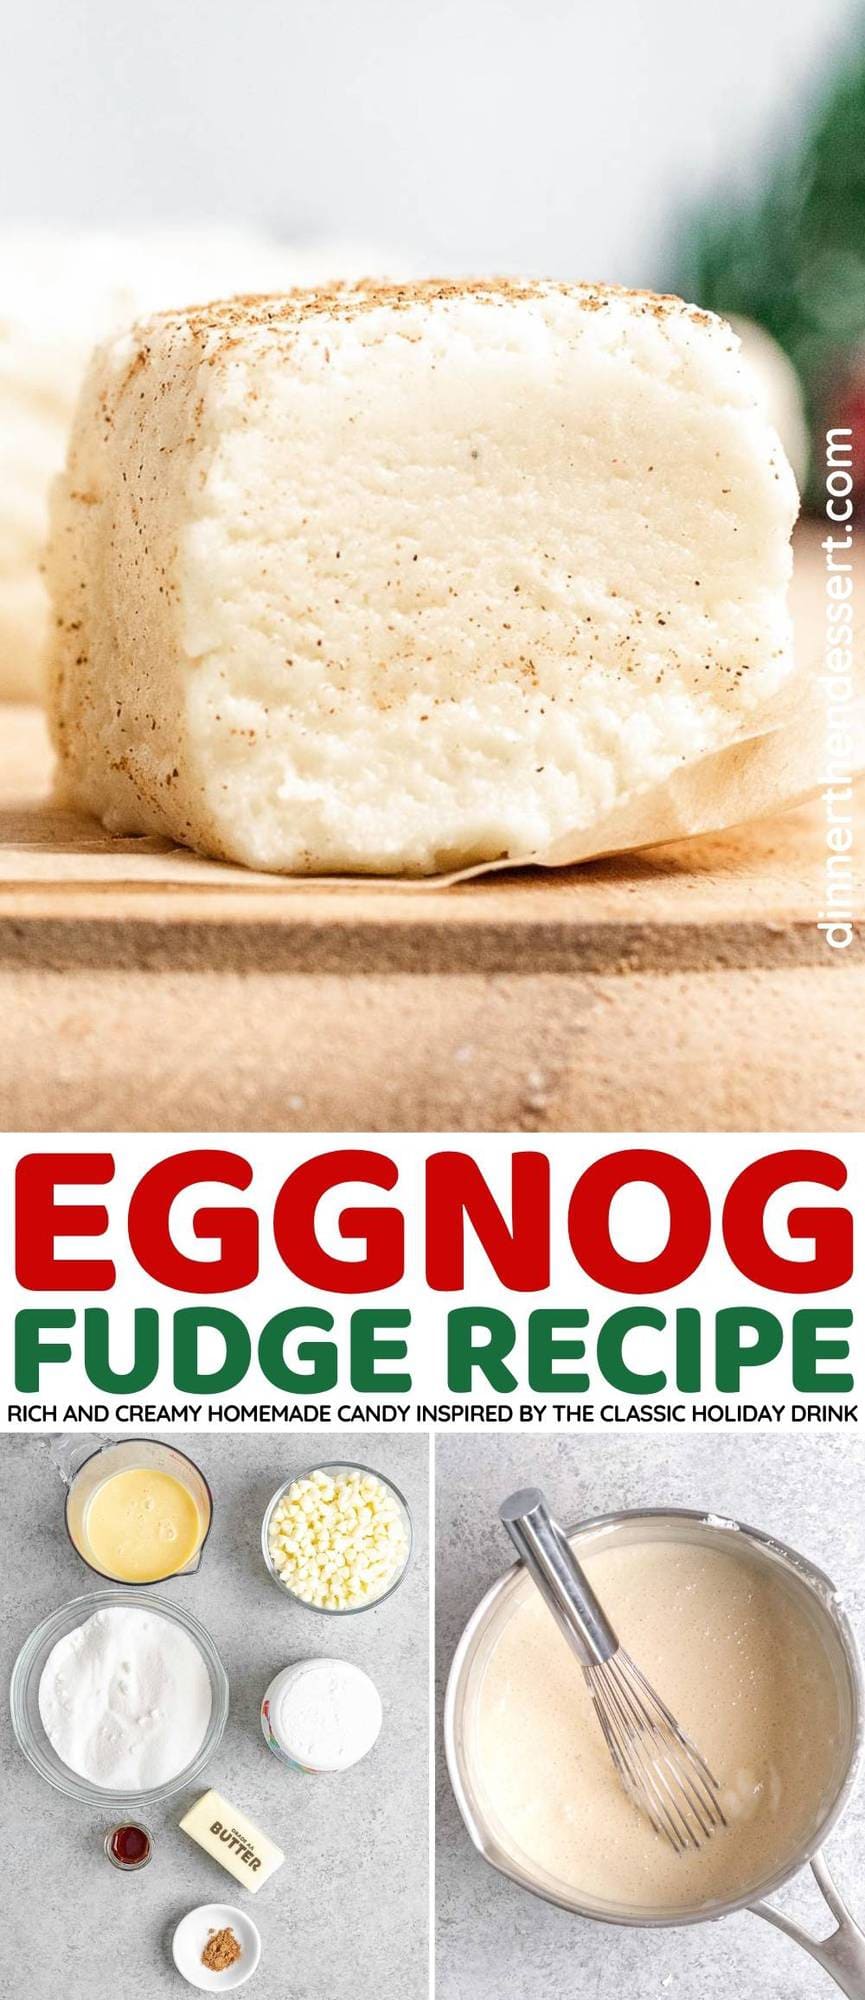 Eggnog Fudge collage